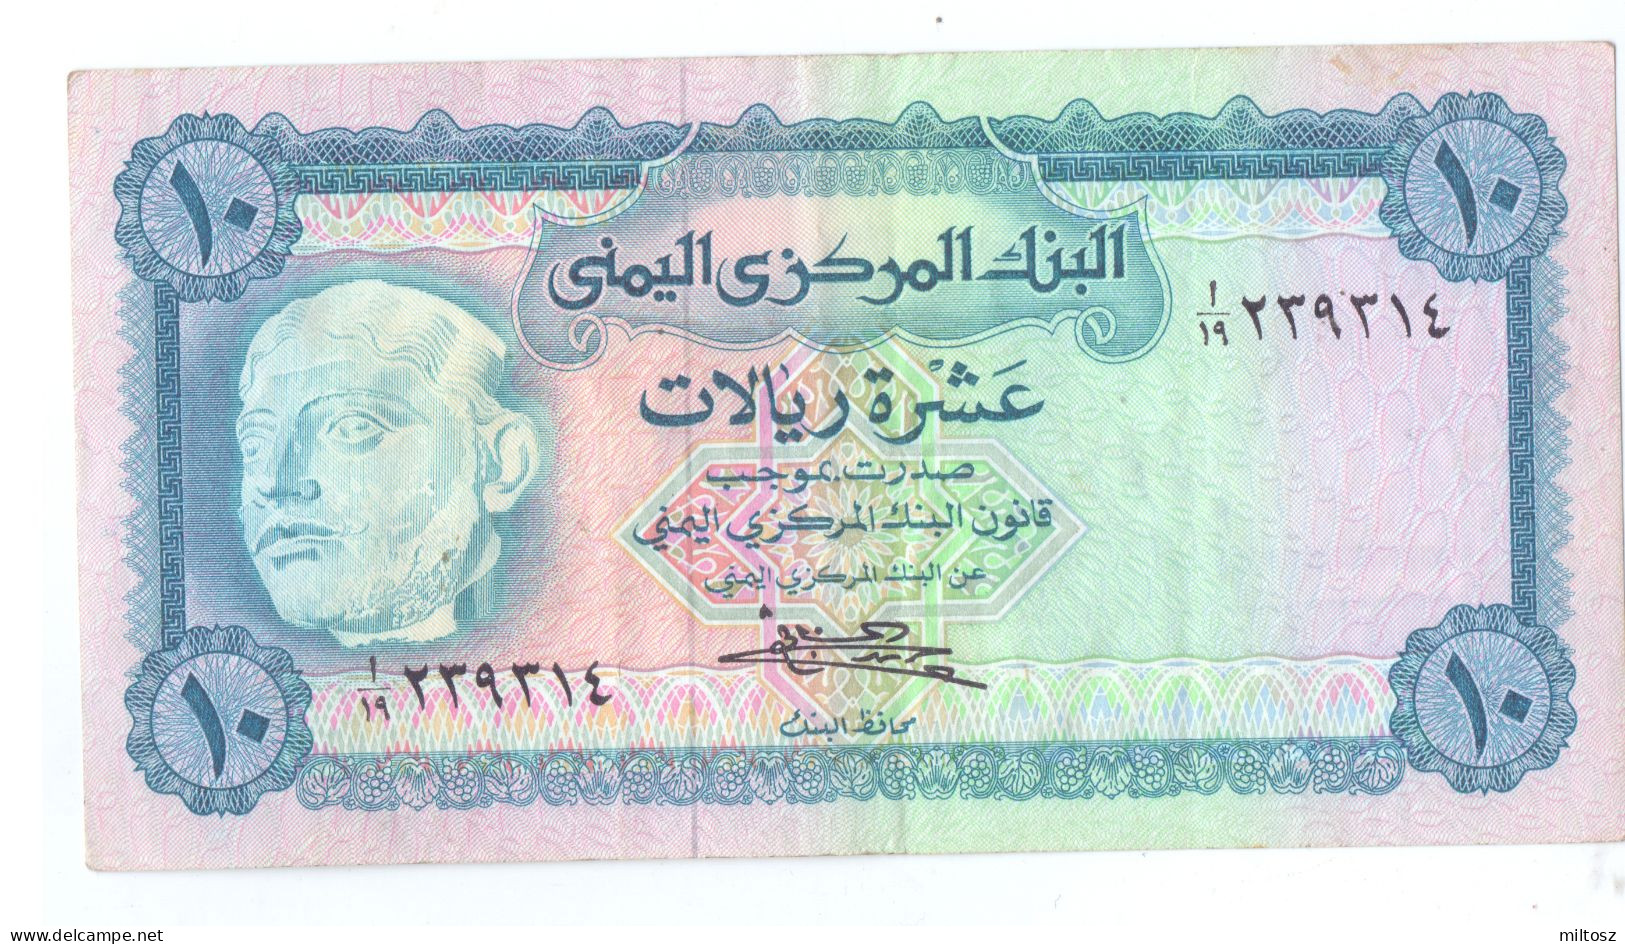 Yemen 10 Rials 1973 (signature 7) KM#13 - Yemen